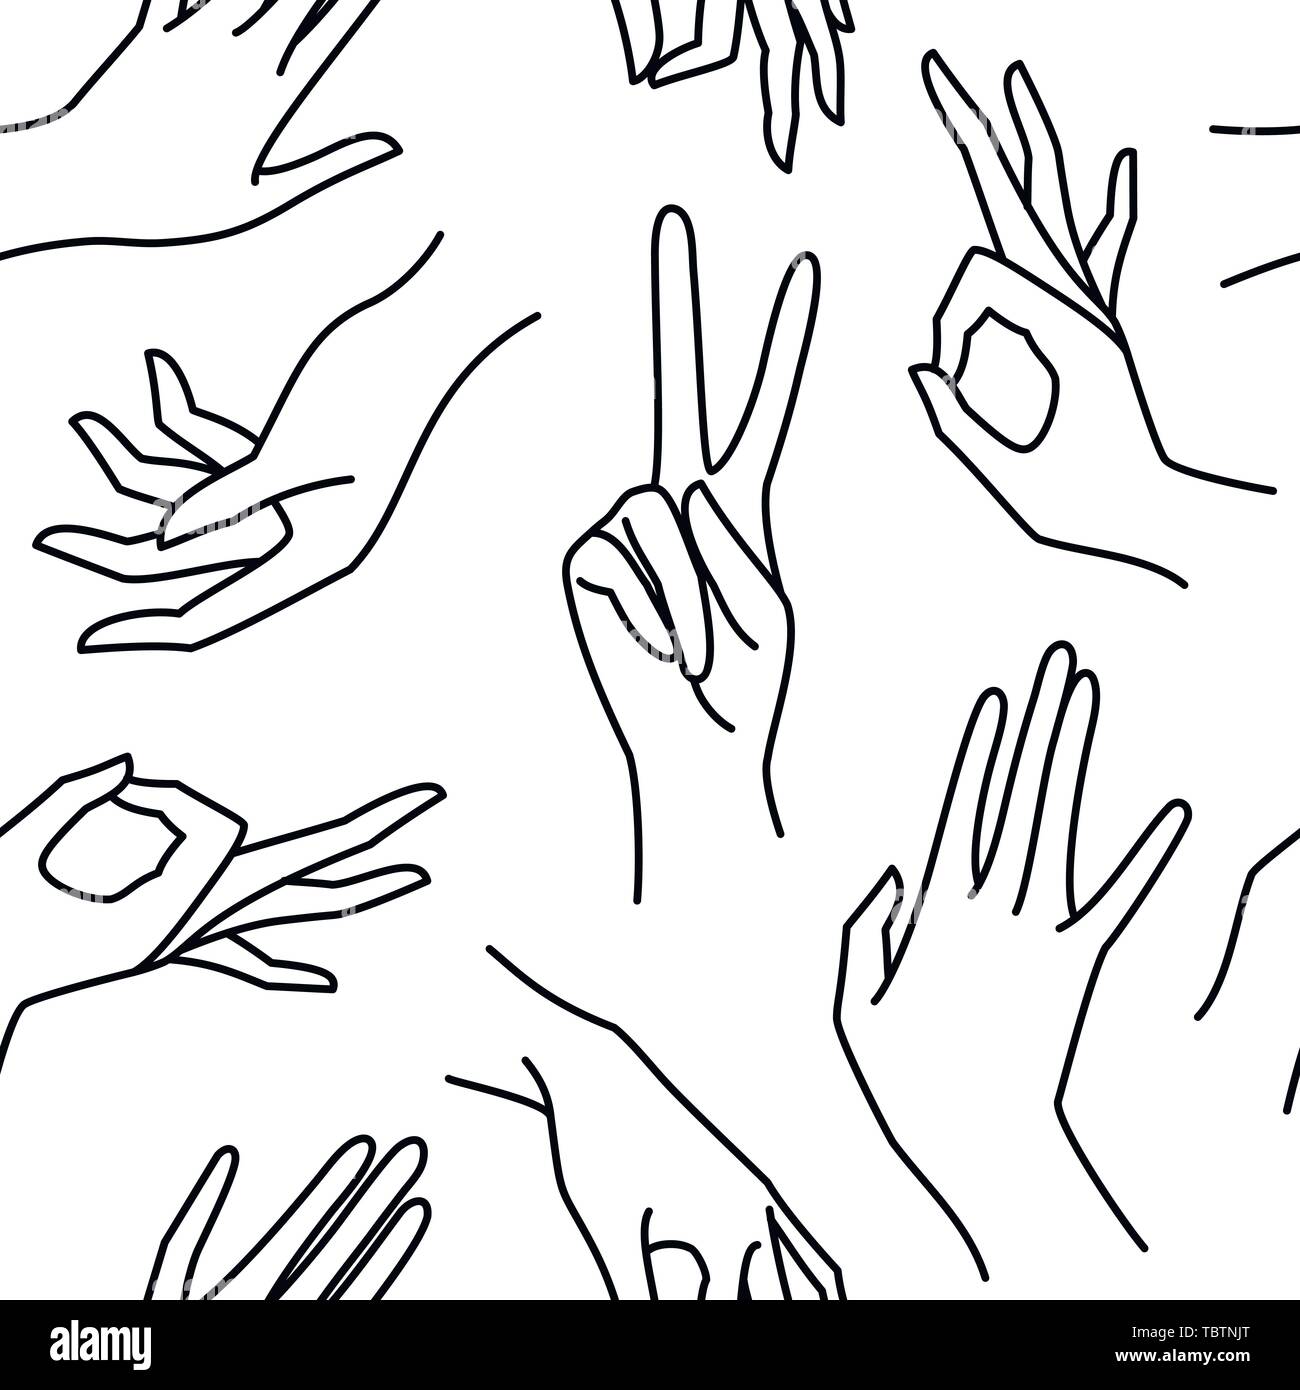 Woman's hand ligne noir et blanc motif transparent. Arrière-plan de femmes sans fin de vecteur mains de différents gestes - La victoire, d'accord. Lineart dans un style minimaliste pour imprimer sur du tissu, l'emballage Illustration de Vecteur